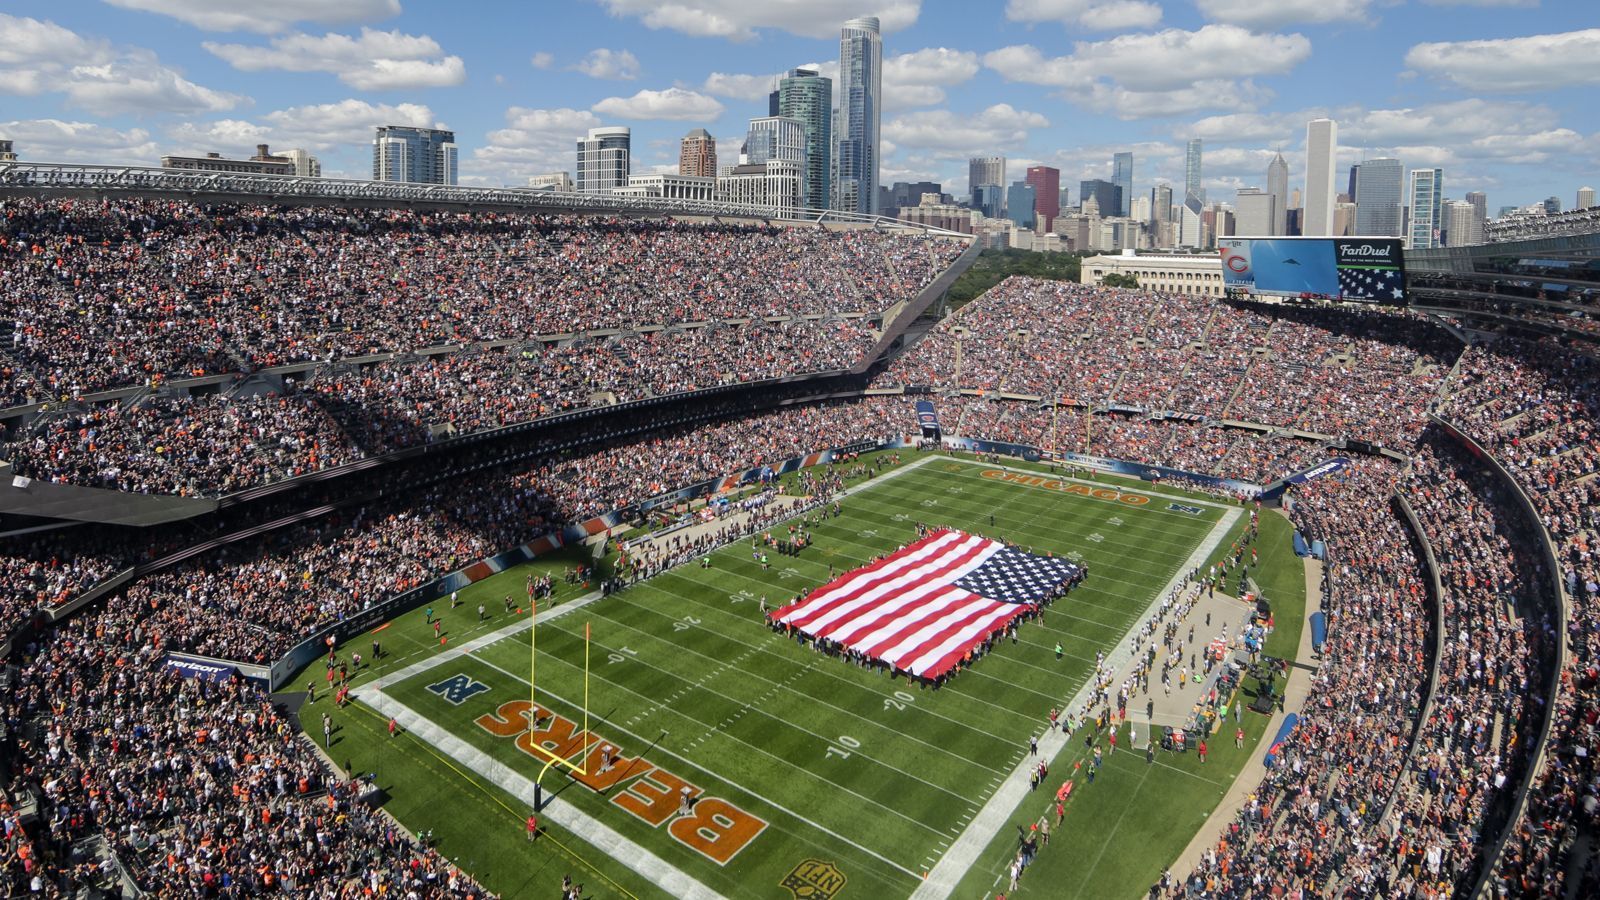 <strong>Die Stadien der 32 NFL-Teams</strong><br>Die Chicago Bears haben offenbar die eigenen <a target="_blank" href="https://www.ran.de/sports/american-football/nfl/news/chicago-bears-aendern-plaene-fuer-neues-stadion-abschied-soldier-field-362365">Stadion-Pläne über den Haufen geworfen</a> und werden nun doch innerhalb der "Windy City" eine neue Spielstätte bauen. Die Franchise hatte zuvor im Vorort Arlington Heights ein Grundstück gekauft, auf dem sie eigentlich ein Stadion errichten wollten. <em><strong>ran</strong></em> schaut auf alle NFL-Stadien.